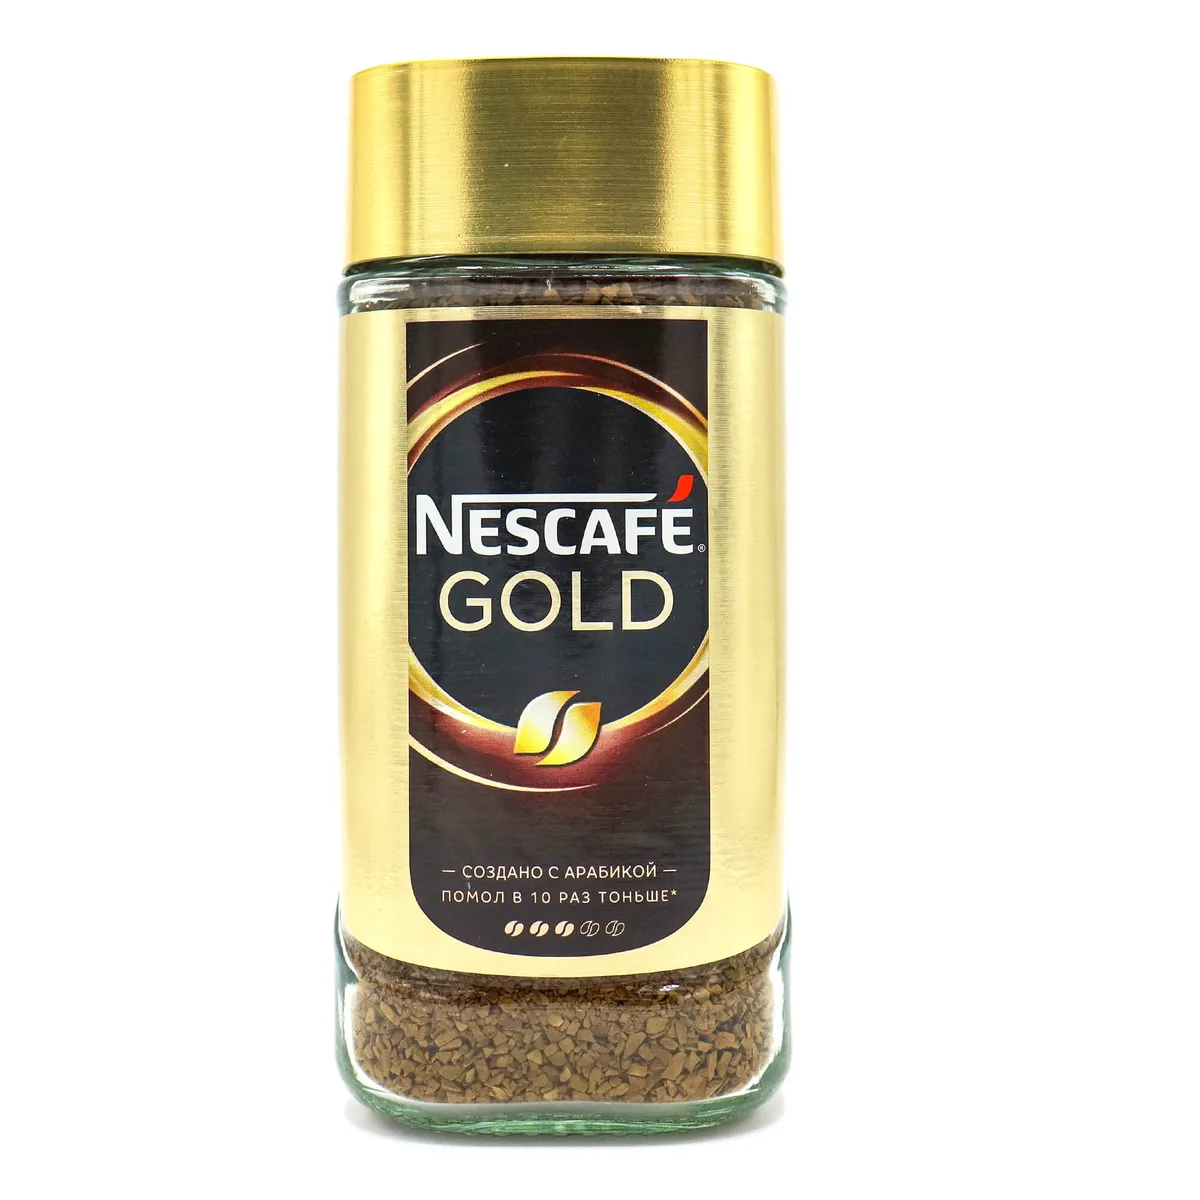 Кофе нескафе 190 грамм. Nescafe Gold 190г. Кофе Нескафе Голд 190г. Кофе растворимый Nescafe Gold, 190г. Нескафе Голд 190 стекло.